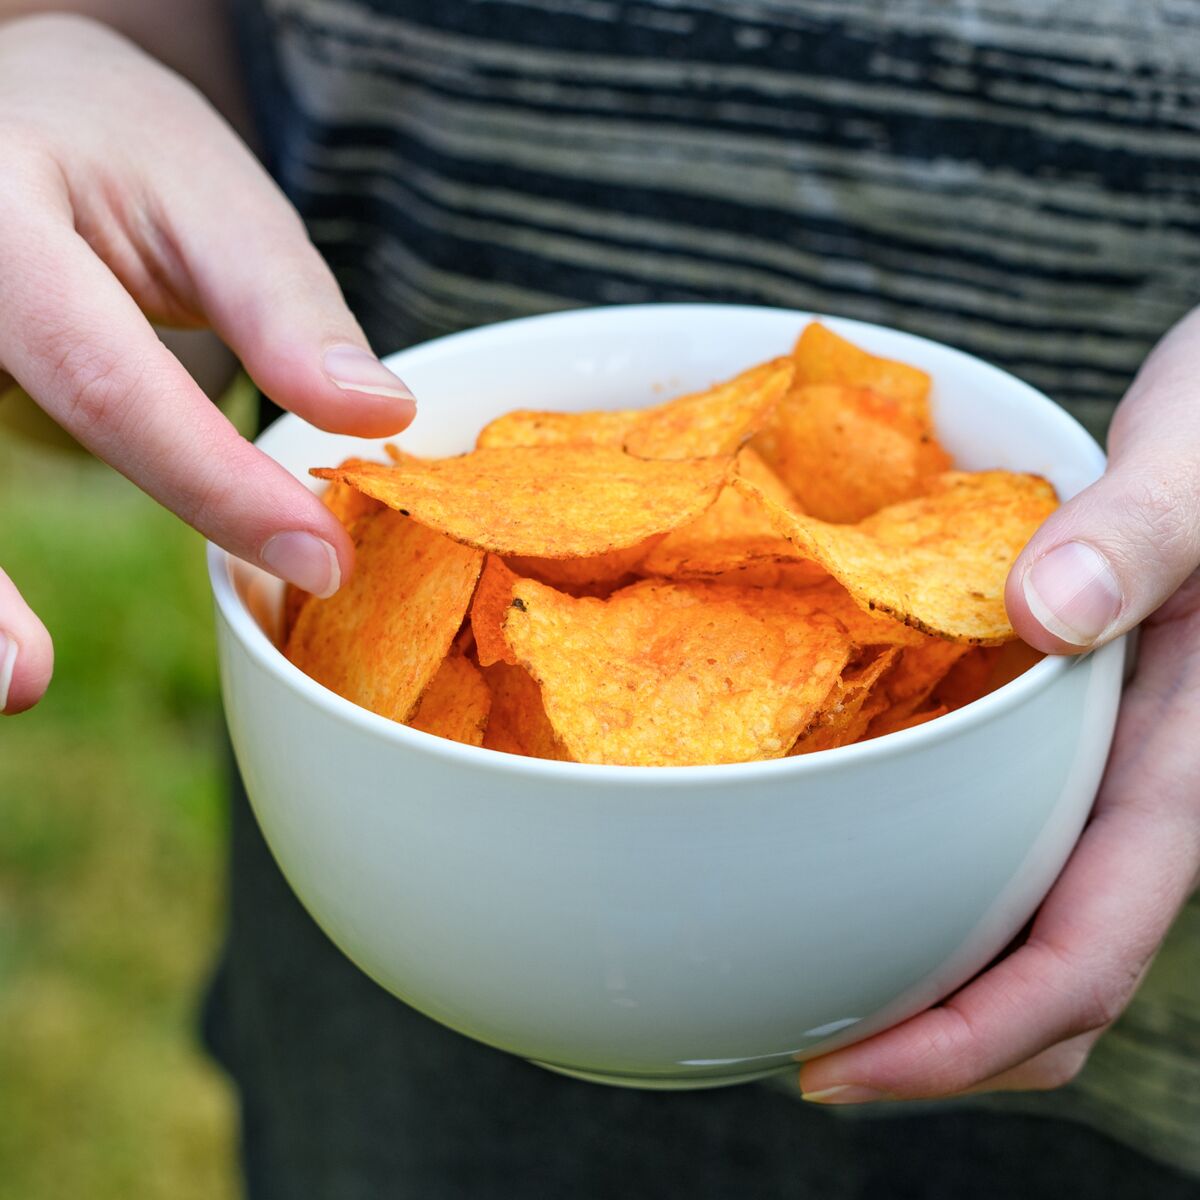 Manger la chips la plus piquante au monde : un adolescent de 14